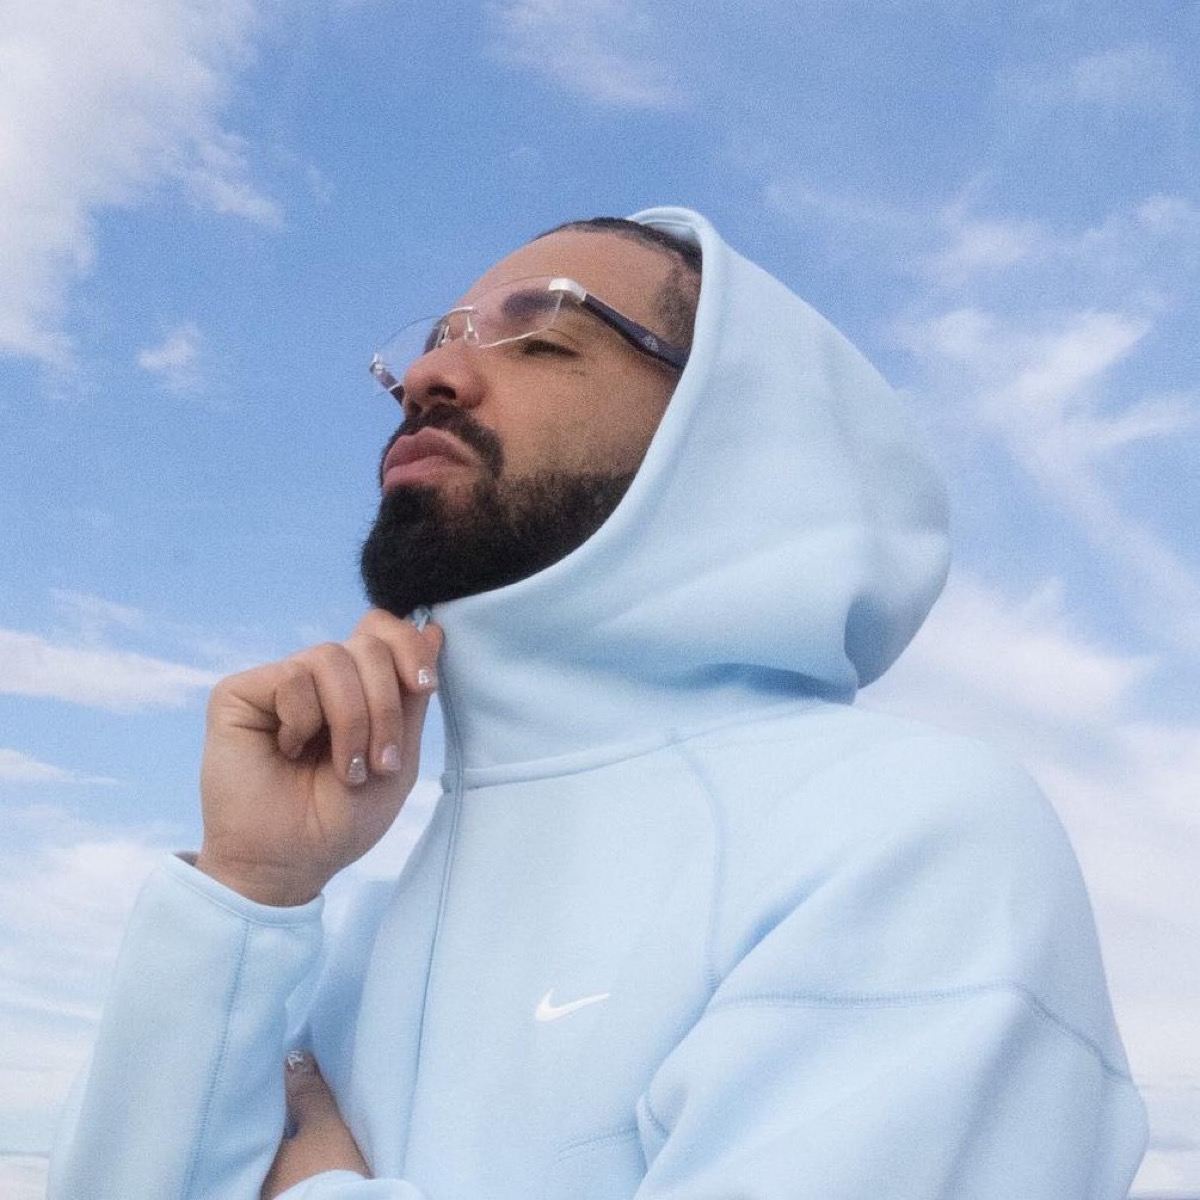 Drake × Nike NOCTA Tech Fleece Collectionが国内7月28日より発売予定 ...